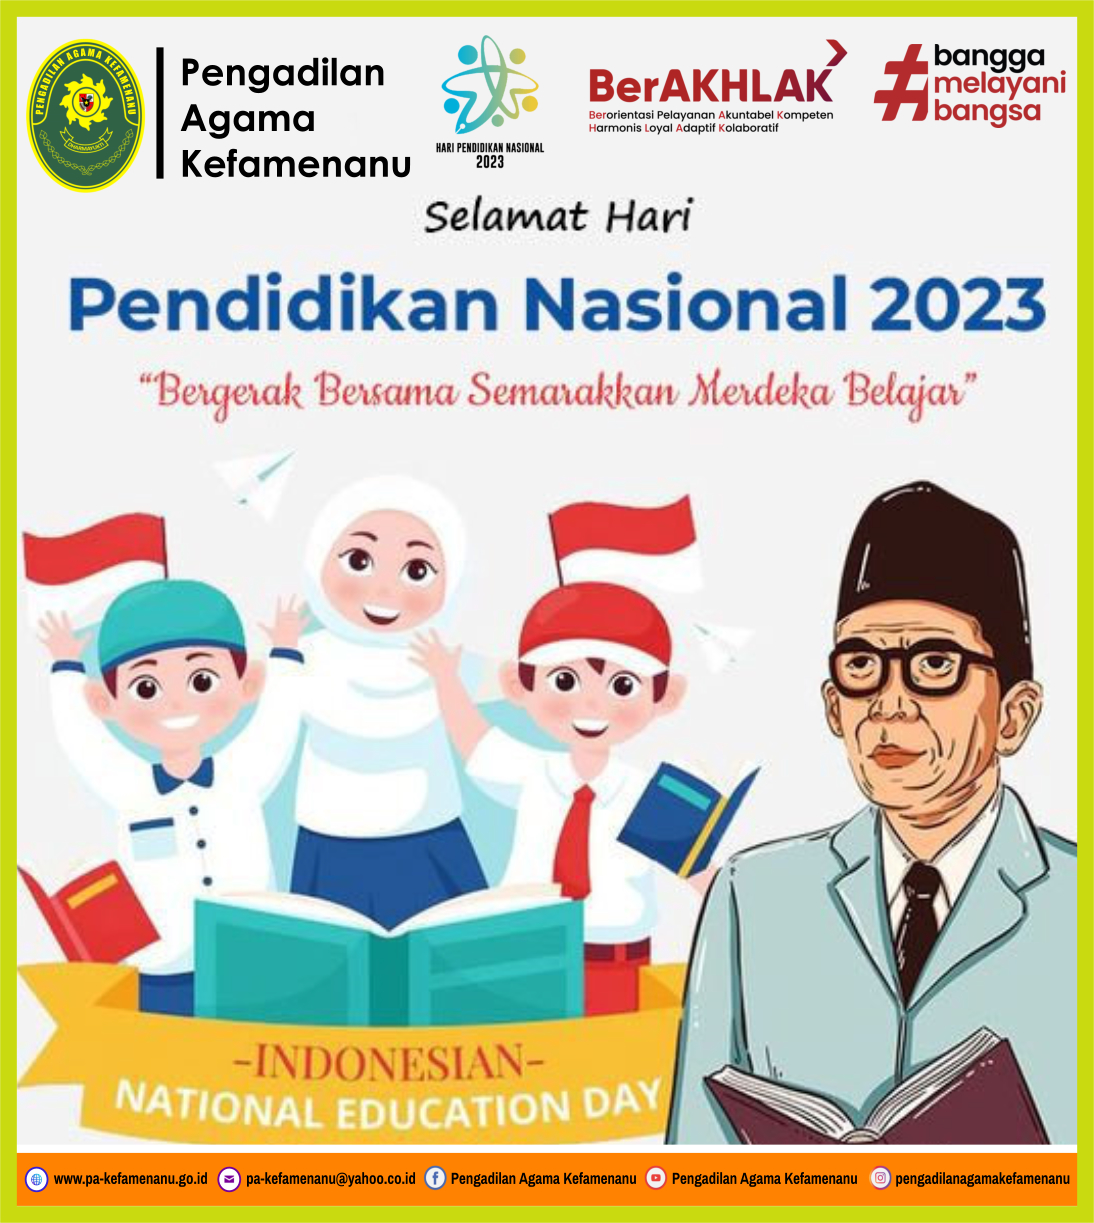 Selamat Hari Pendidikan Nasional 2023